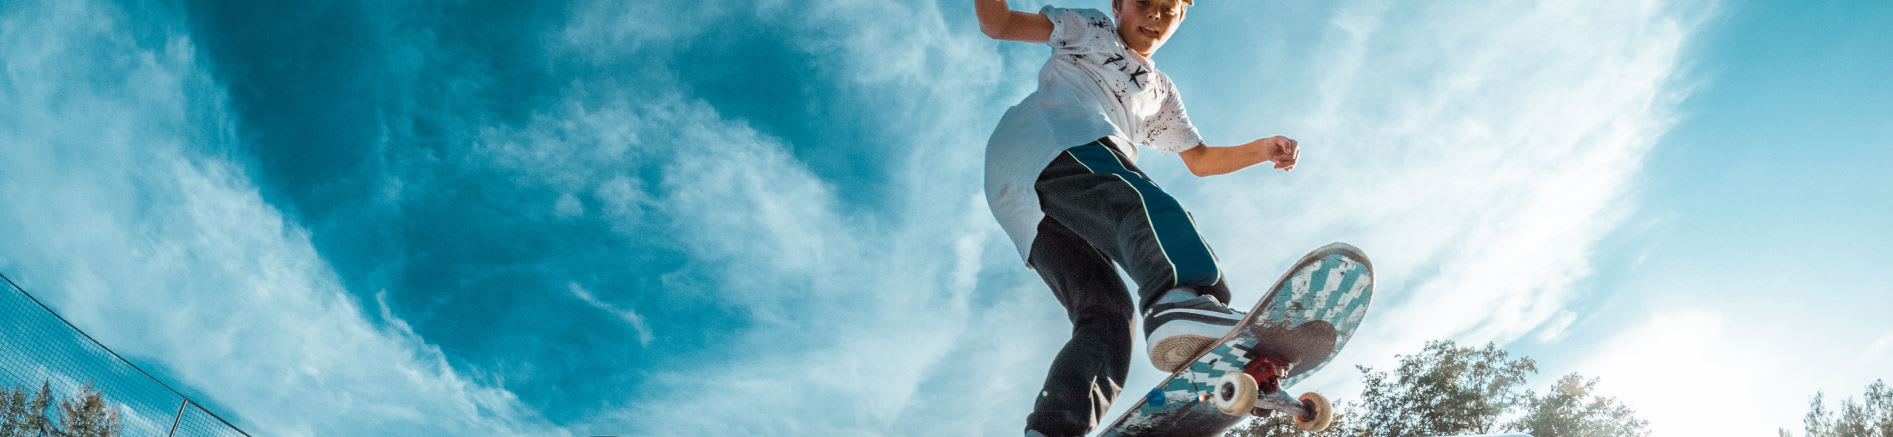 Skateboarder Image